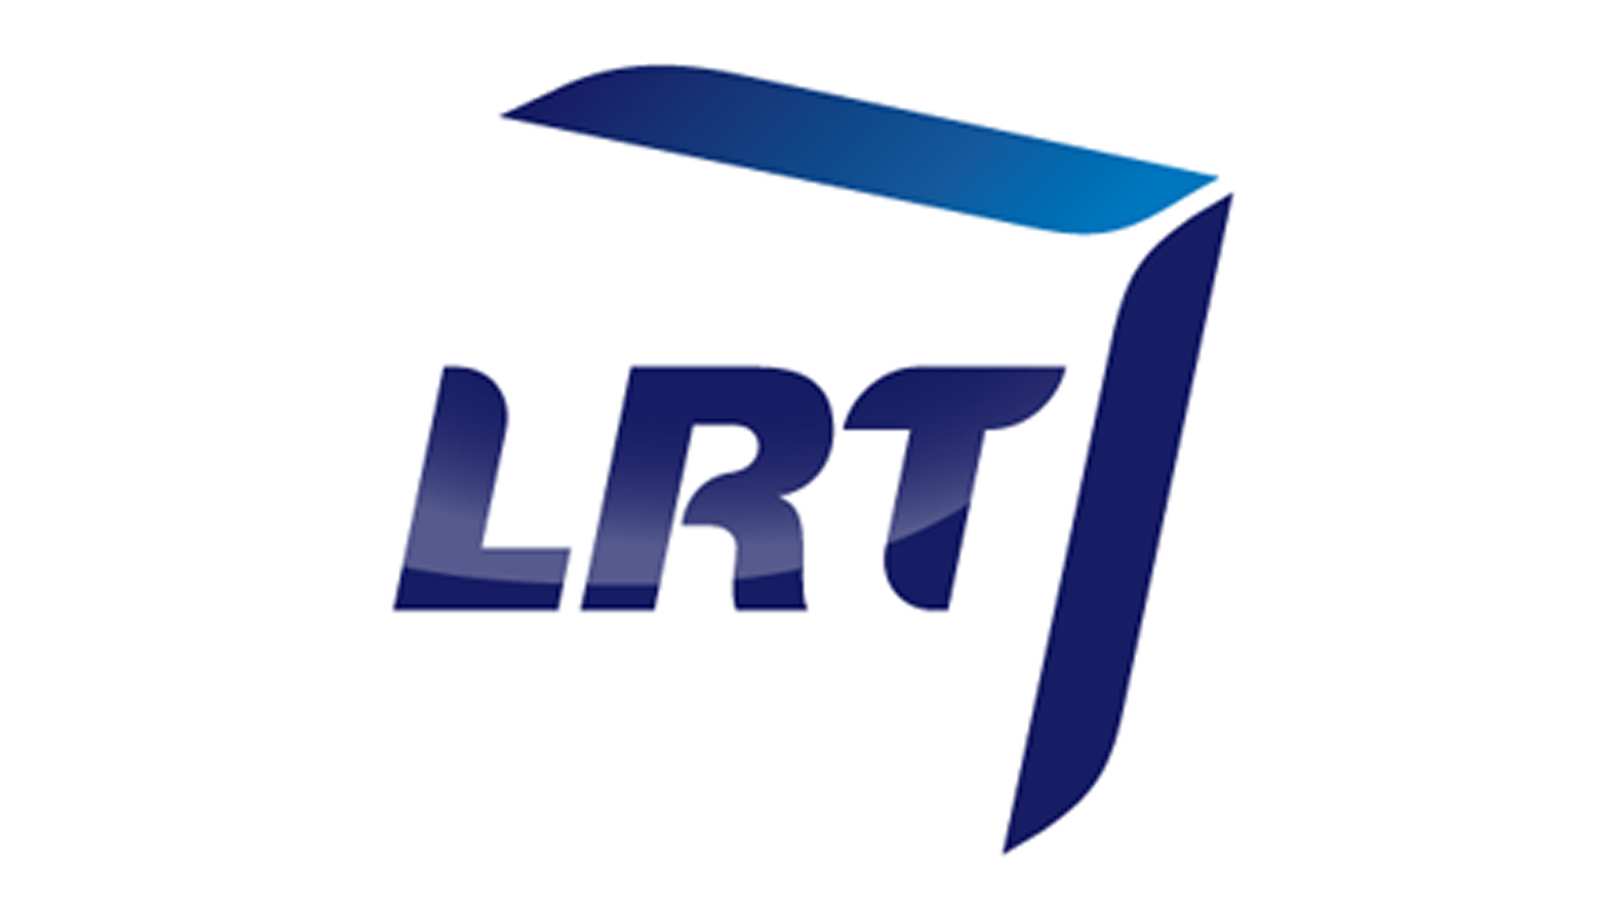 LRT vadovės Seimo nariai dar neatstatydins: atsisakė įtraukti klausimą į darbotvarkę